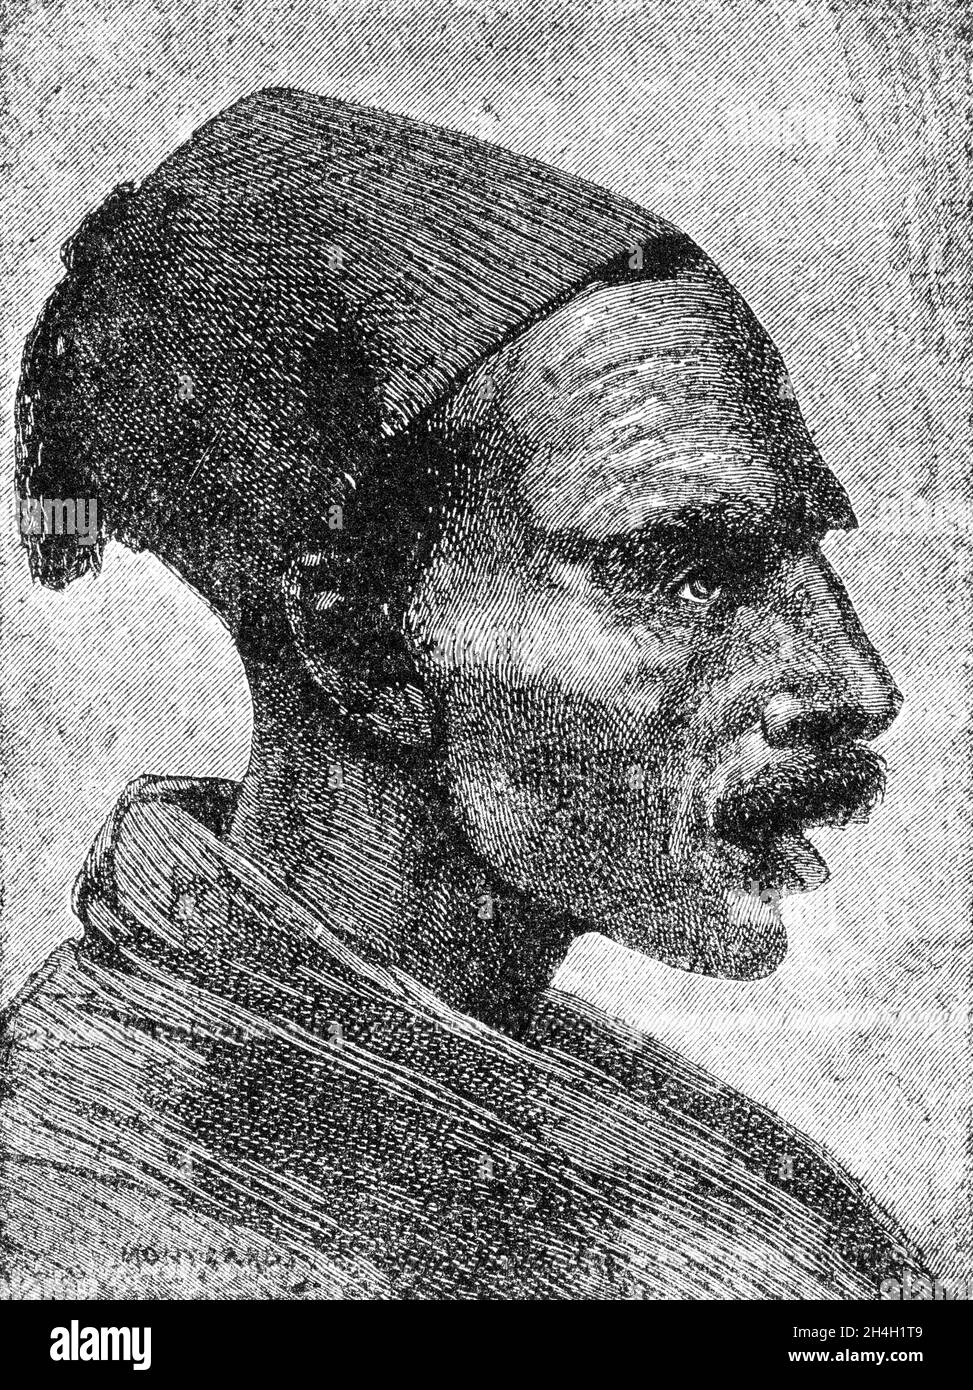 Stich von Al-Zubayr Rahma Mansur Pasha (1830 – 1913), auch bekannt als Sebehr Rahma oder Rahama Zobeir, einem Sklavenhändler im späten 19. Jahrhundert und Nemesis von General Gordon in Khartum. Später wurde er pascha- und sudanesischer Gouverneur. Stockfoto